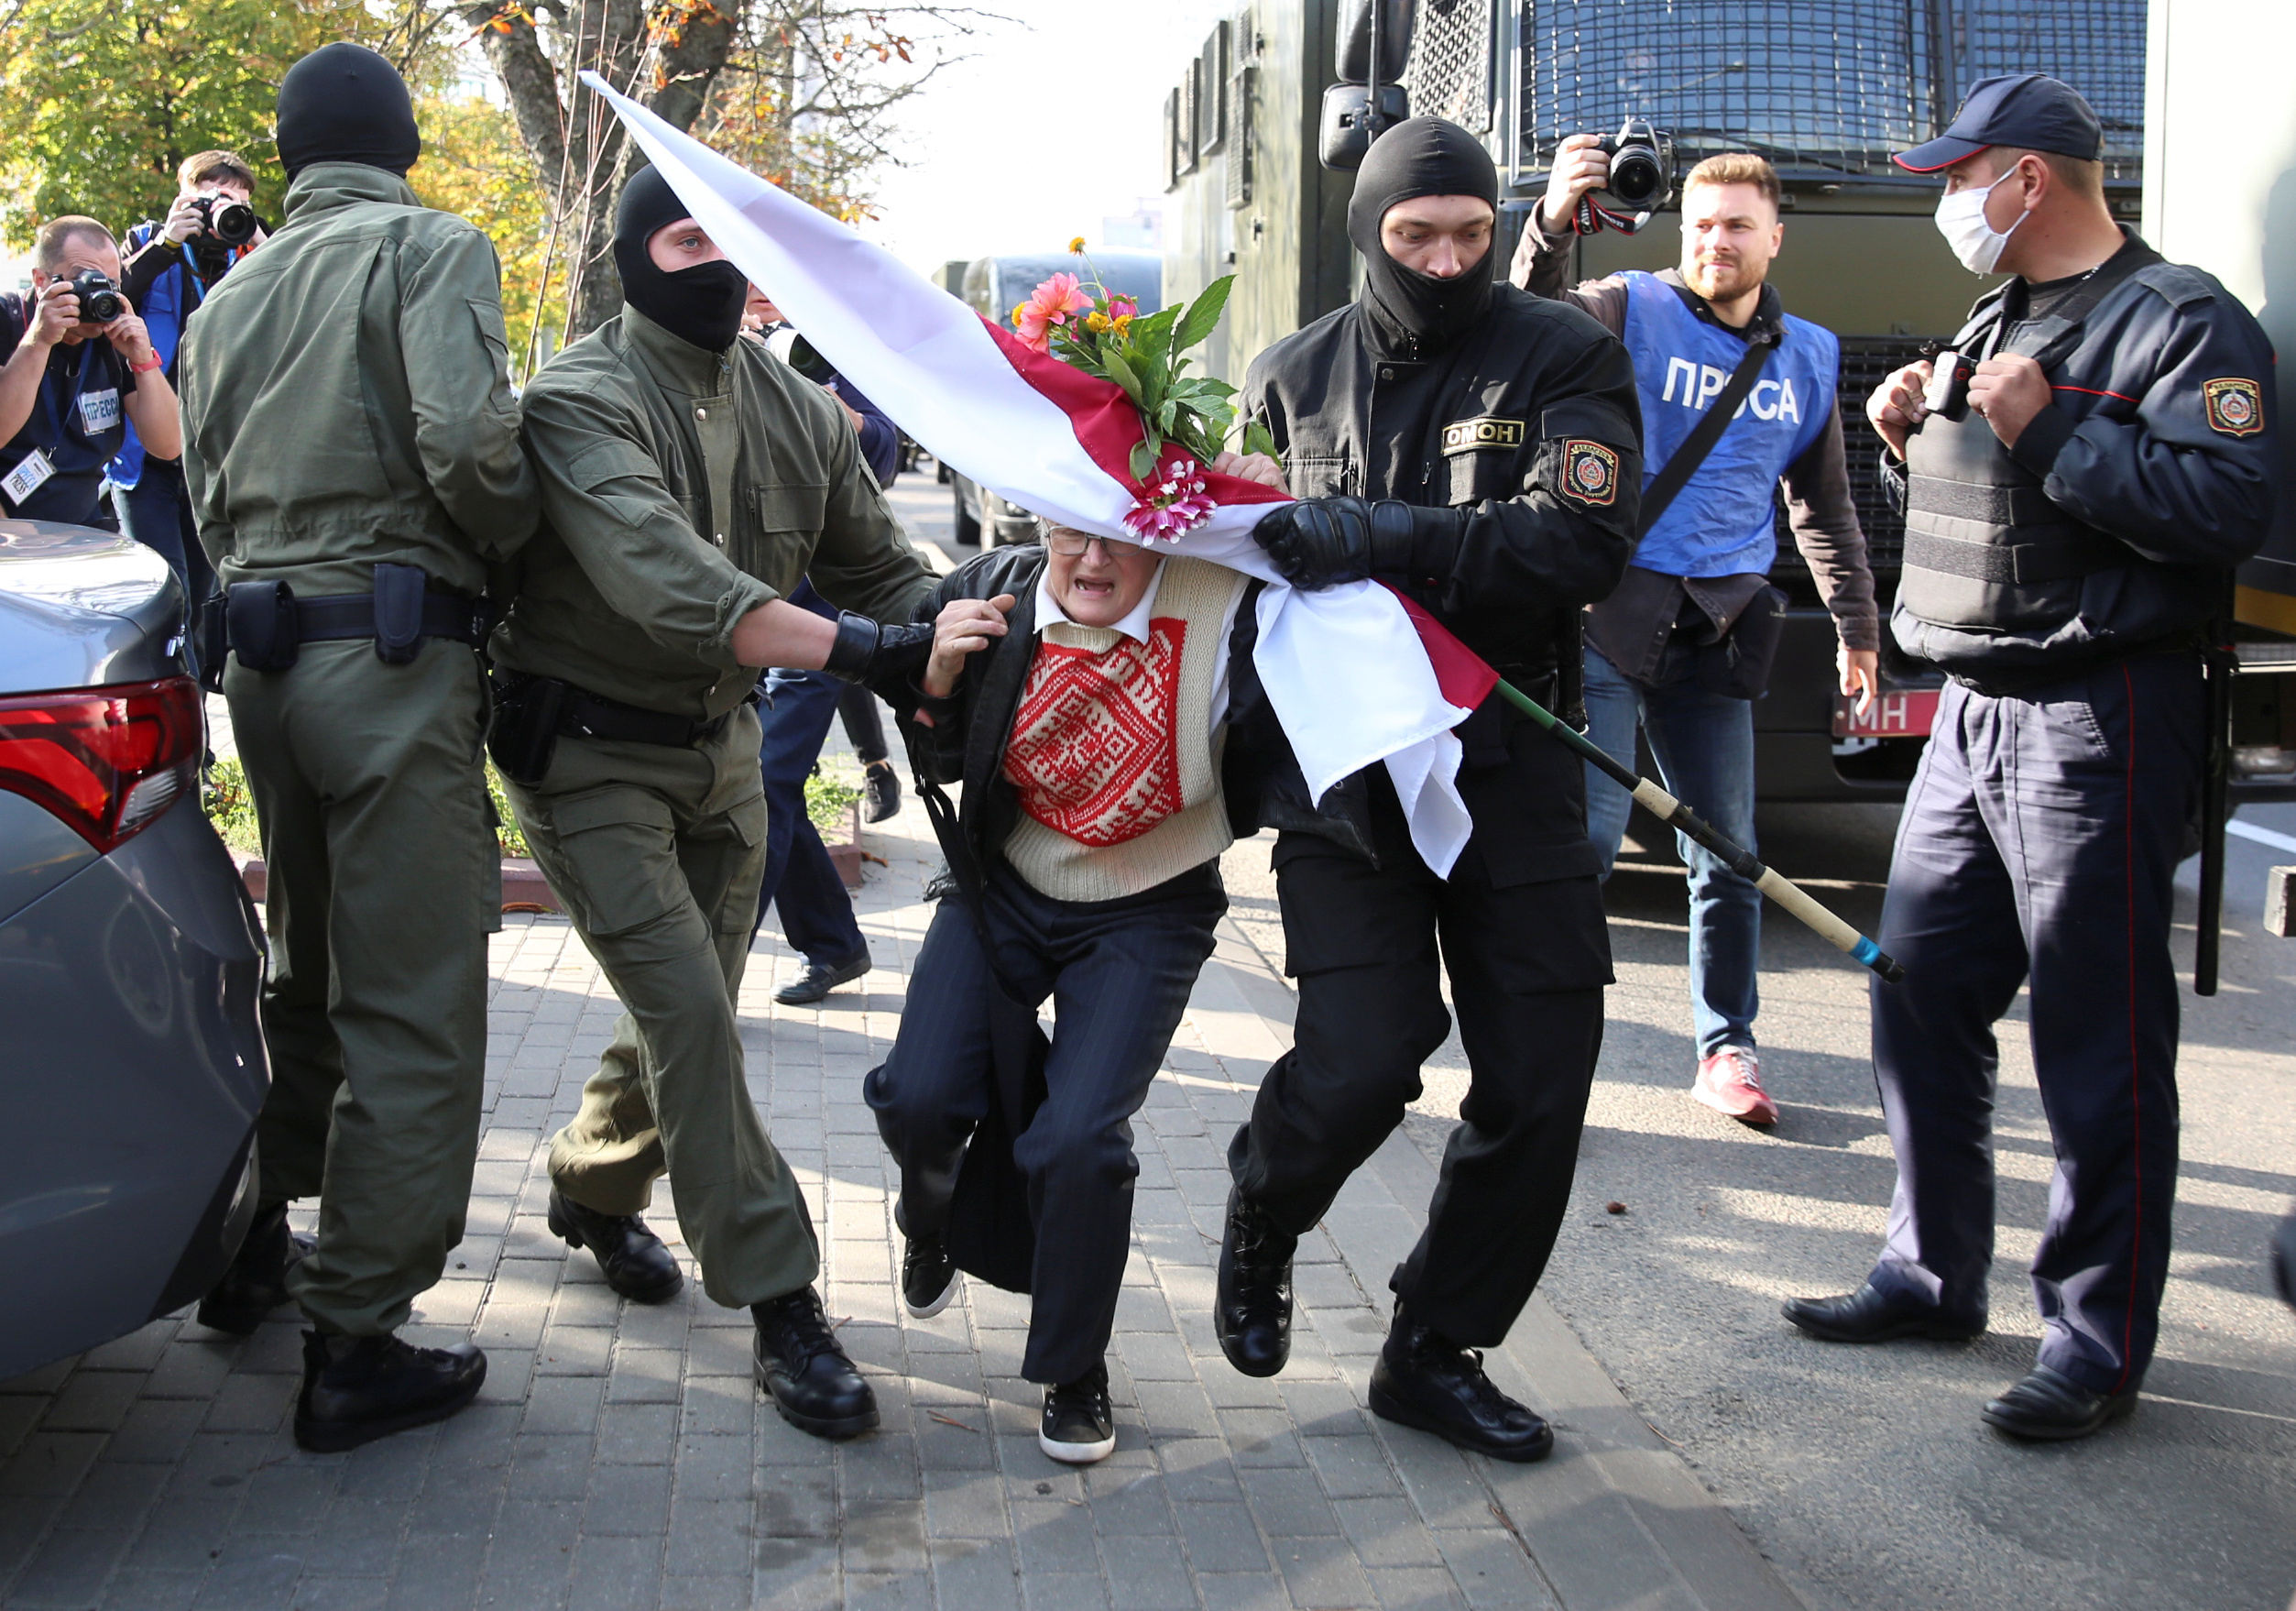 Среди задержанных оказалась известная белорусская оппозиционная активистка - 73-летняя Нина Багинская. Фото Tut.By via REUTERS/Scanpix/Leta